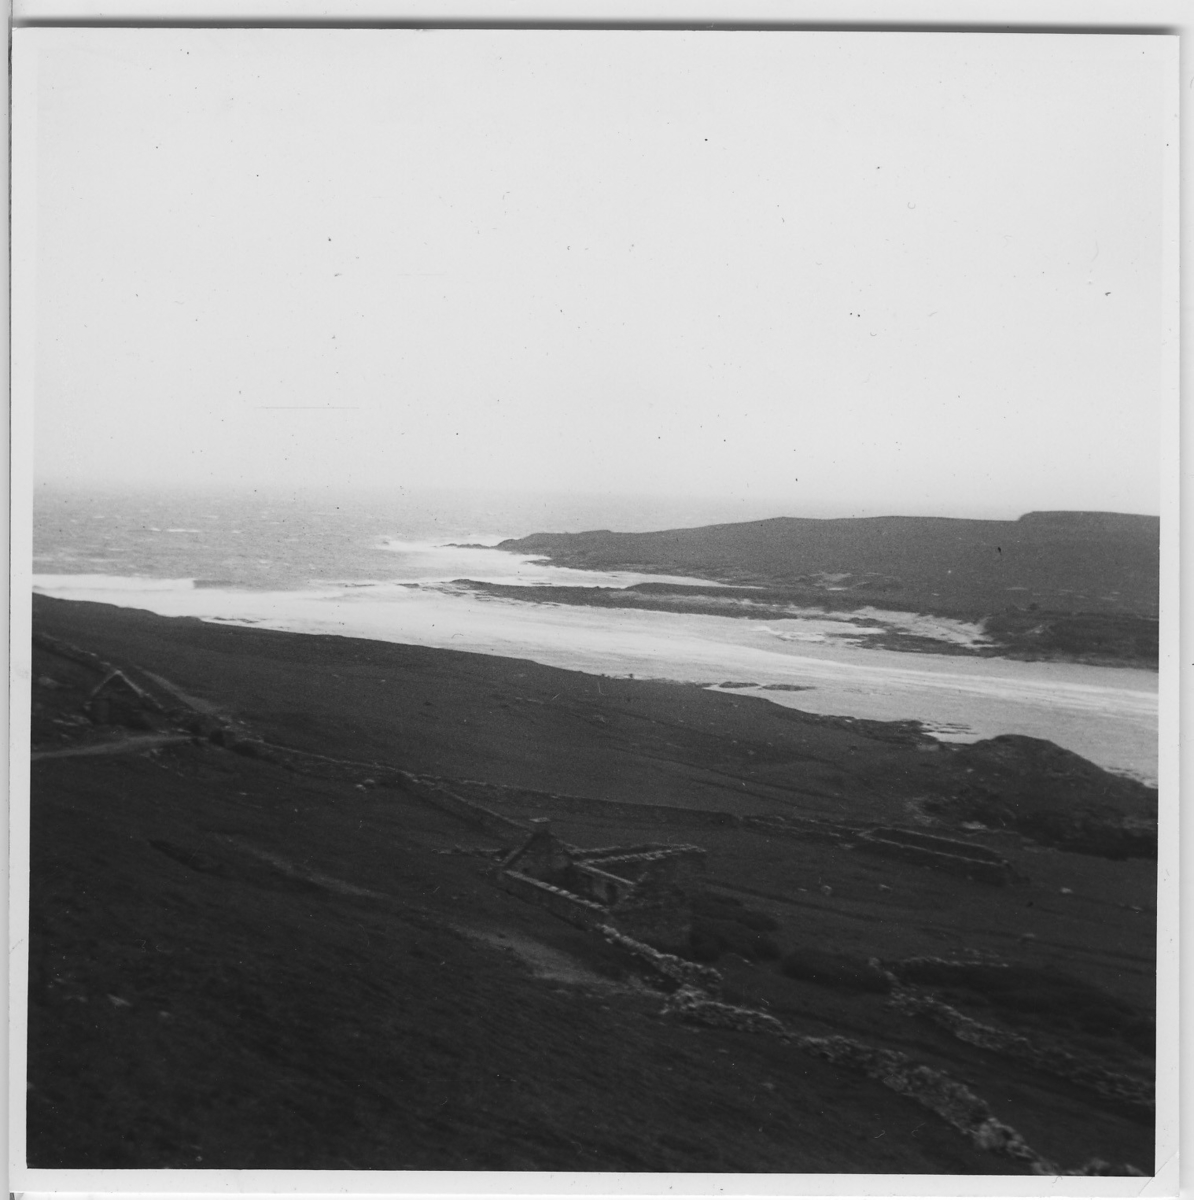 'Från ''Skageraks''-expeditionen till Hebriderna och Shetland: ::  :: Sundet Bressay - Noss, med bebyggelse synlig på sluttning ned till vattnet (förstorad version av foto nr 4113:44) ::  :: Ingår i serie med fotonr. 4113:1-82.'